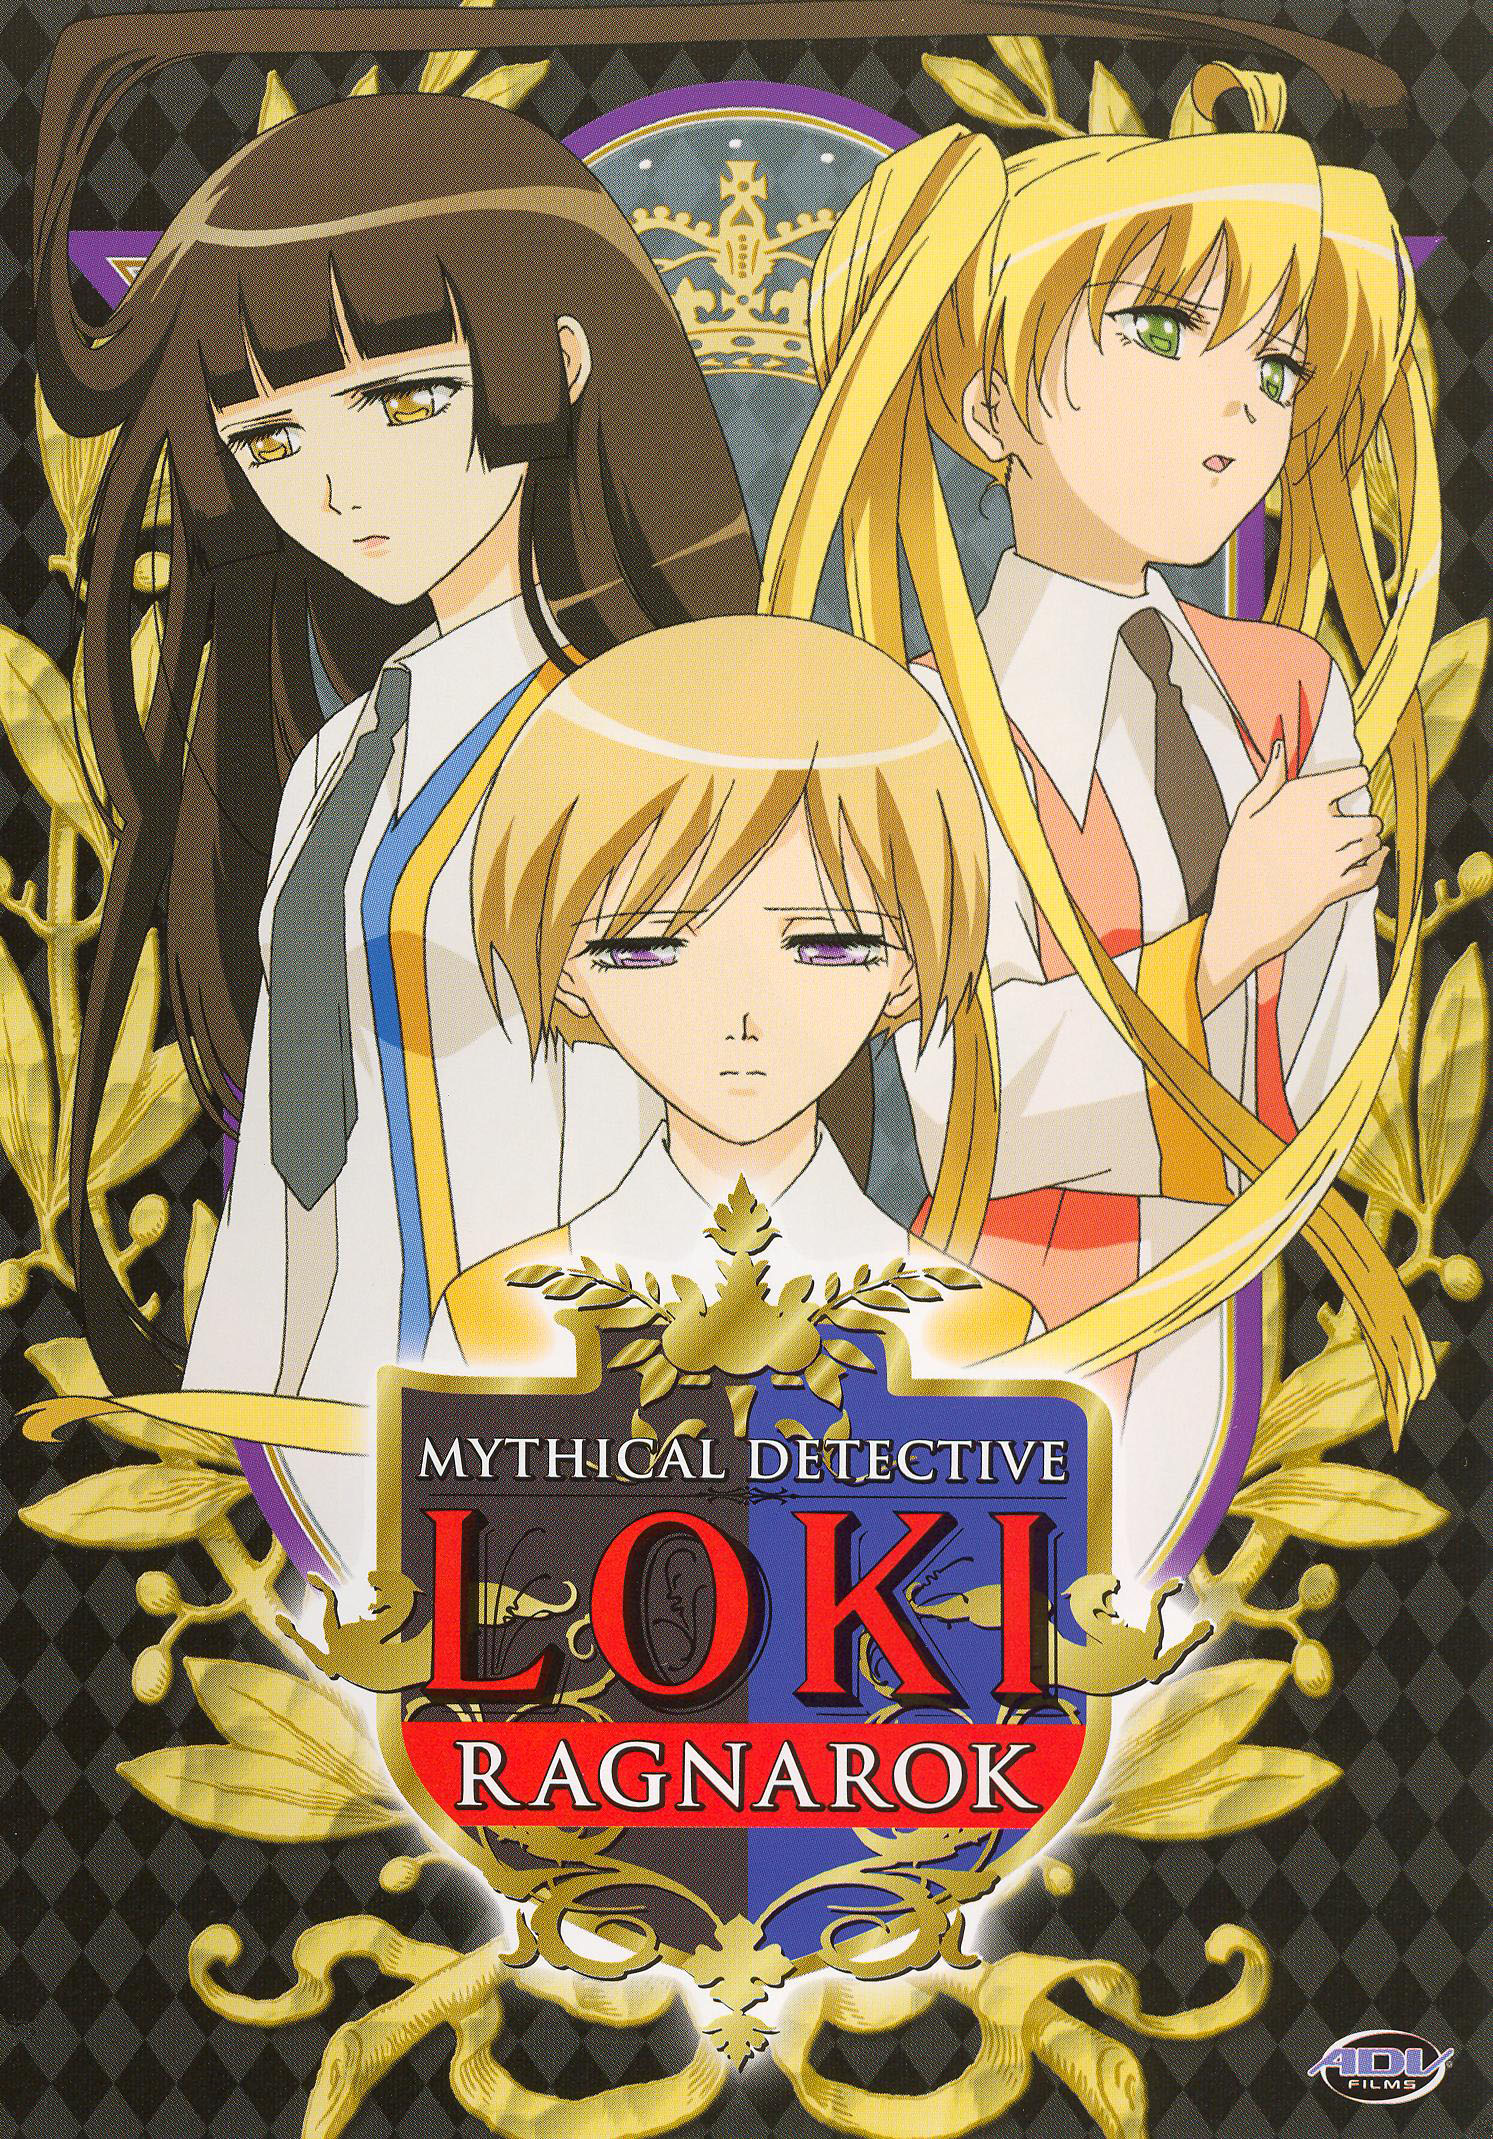 RAGNAROK THE ANIMATION Vol.4 [DVD]